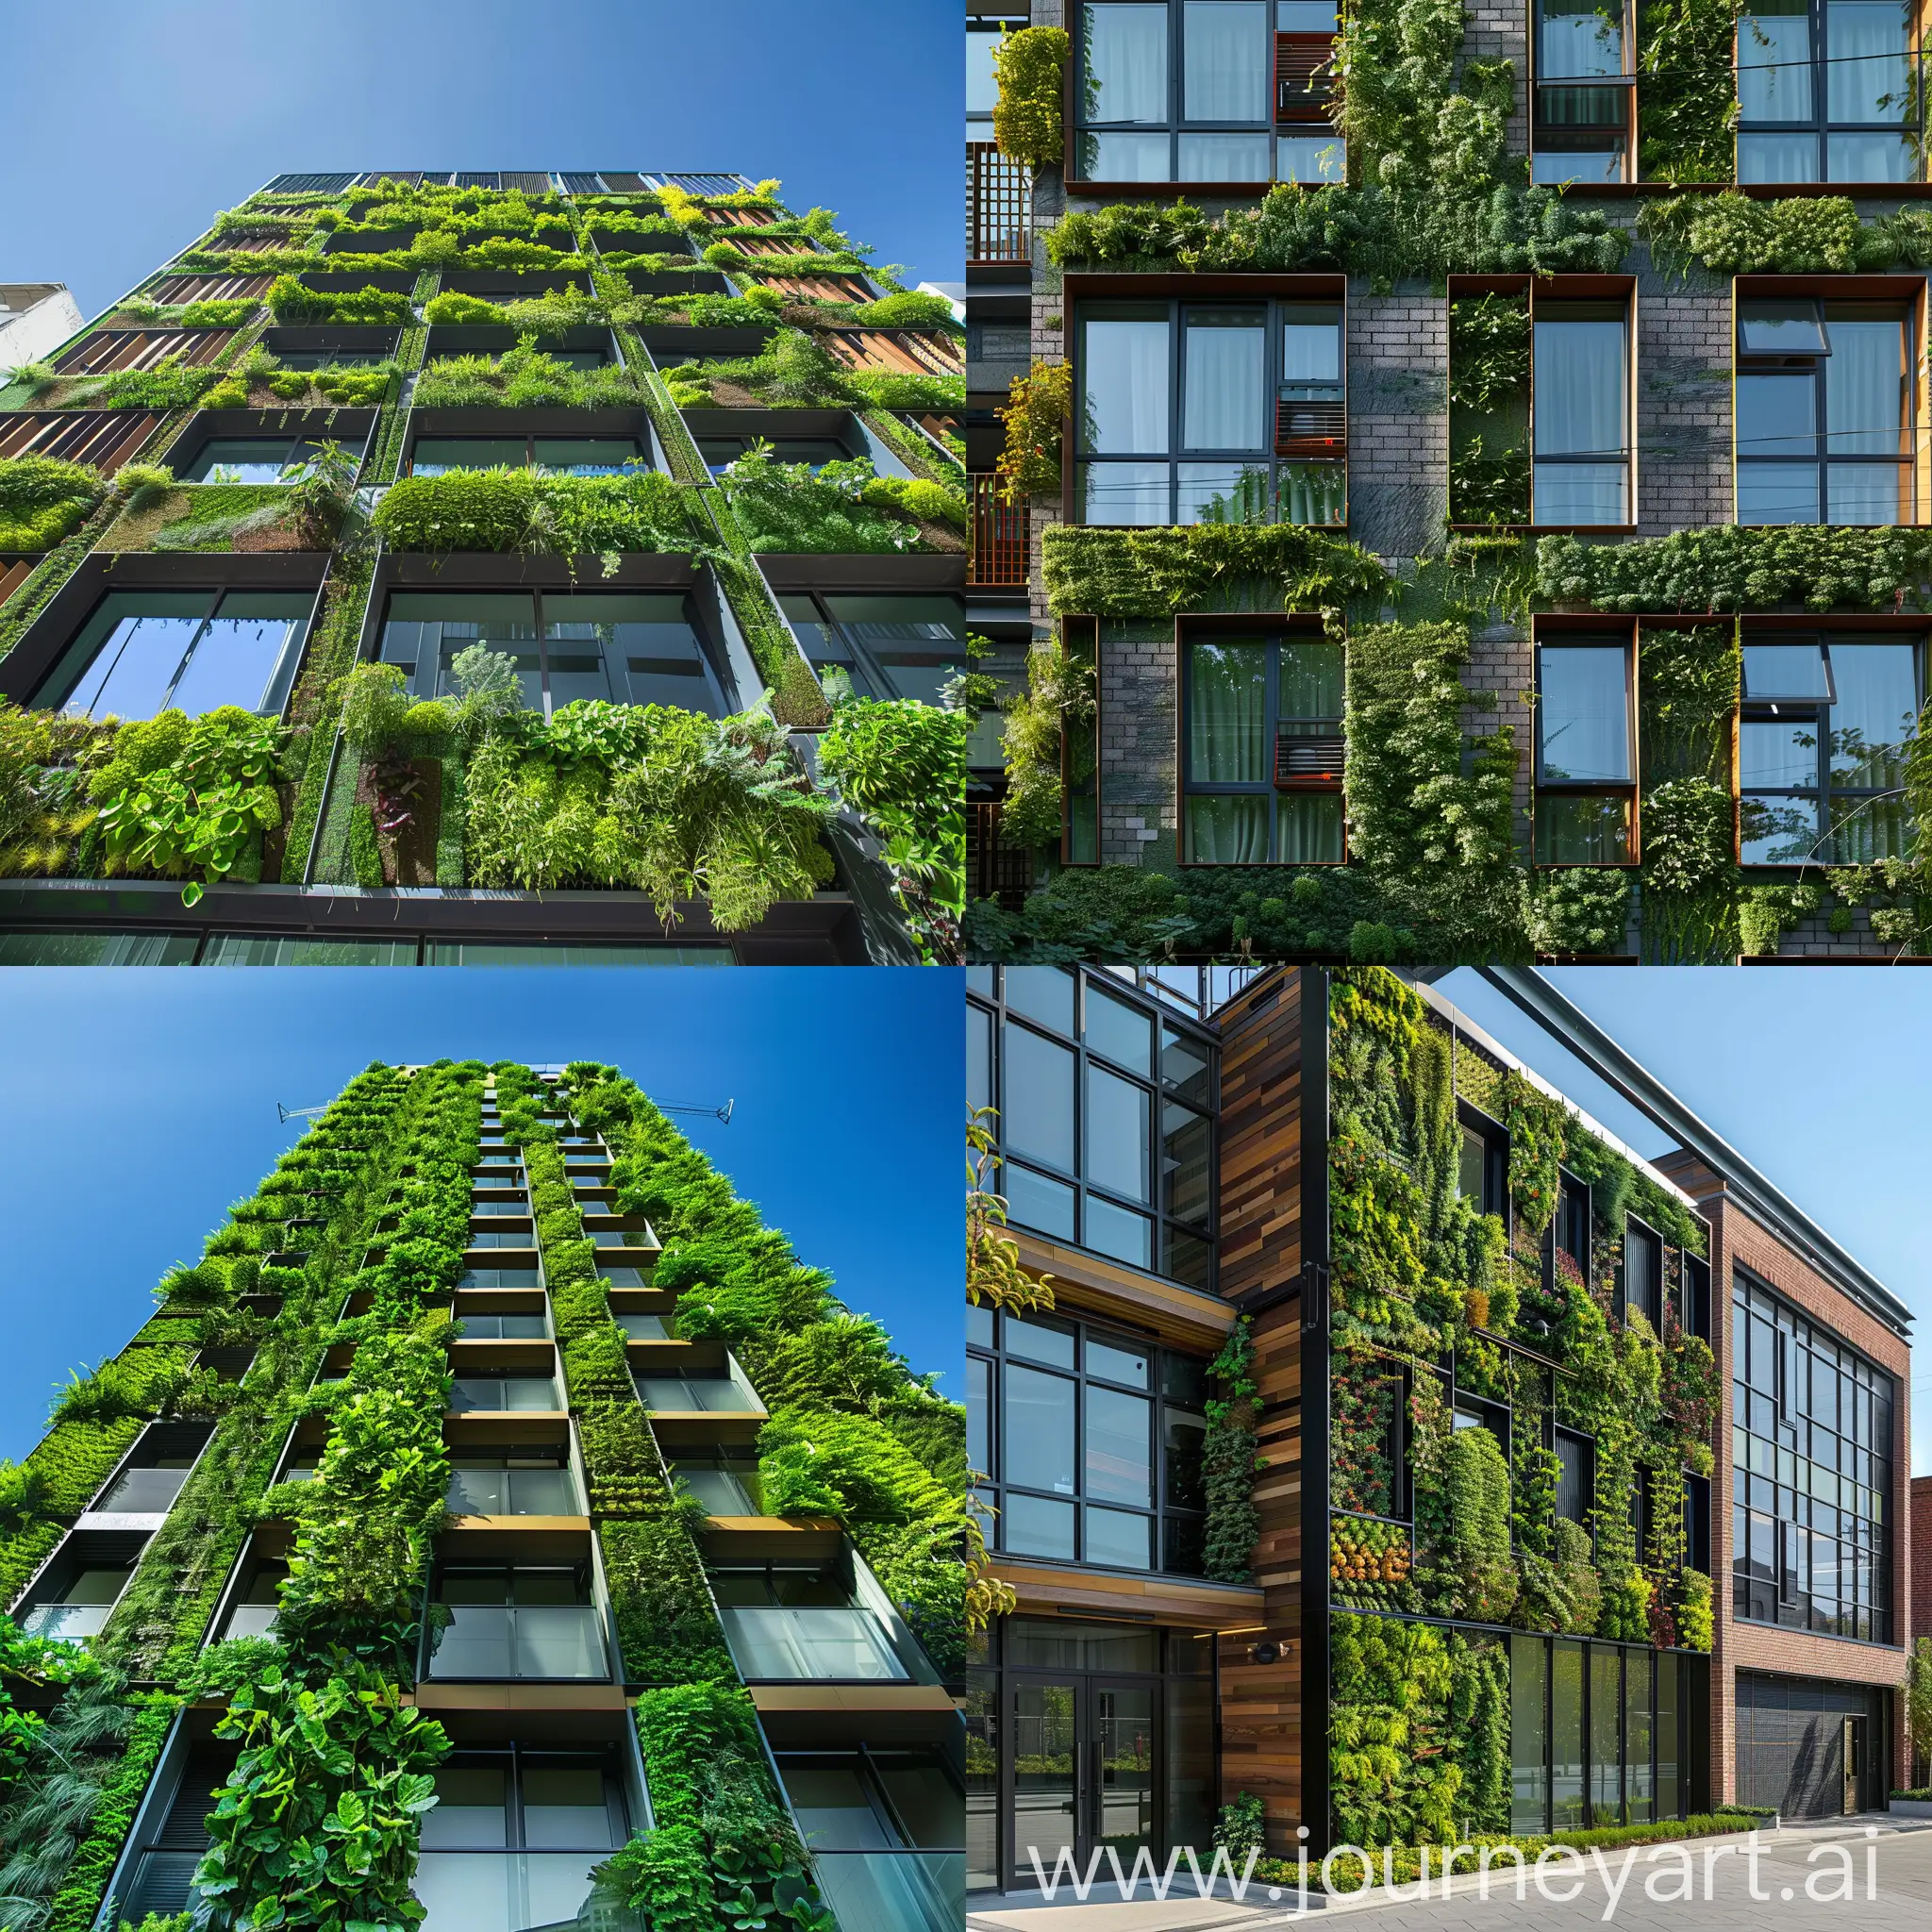 Vibrant-Green-Wall-on-Urban-Building-Facade